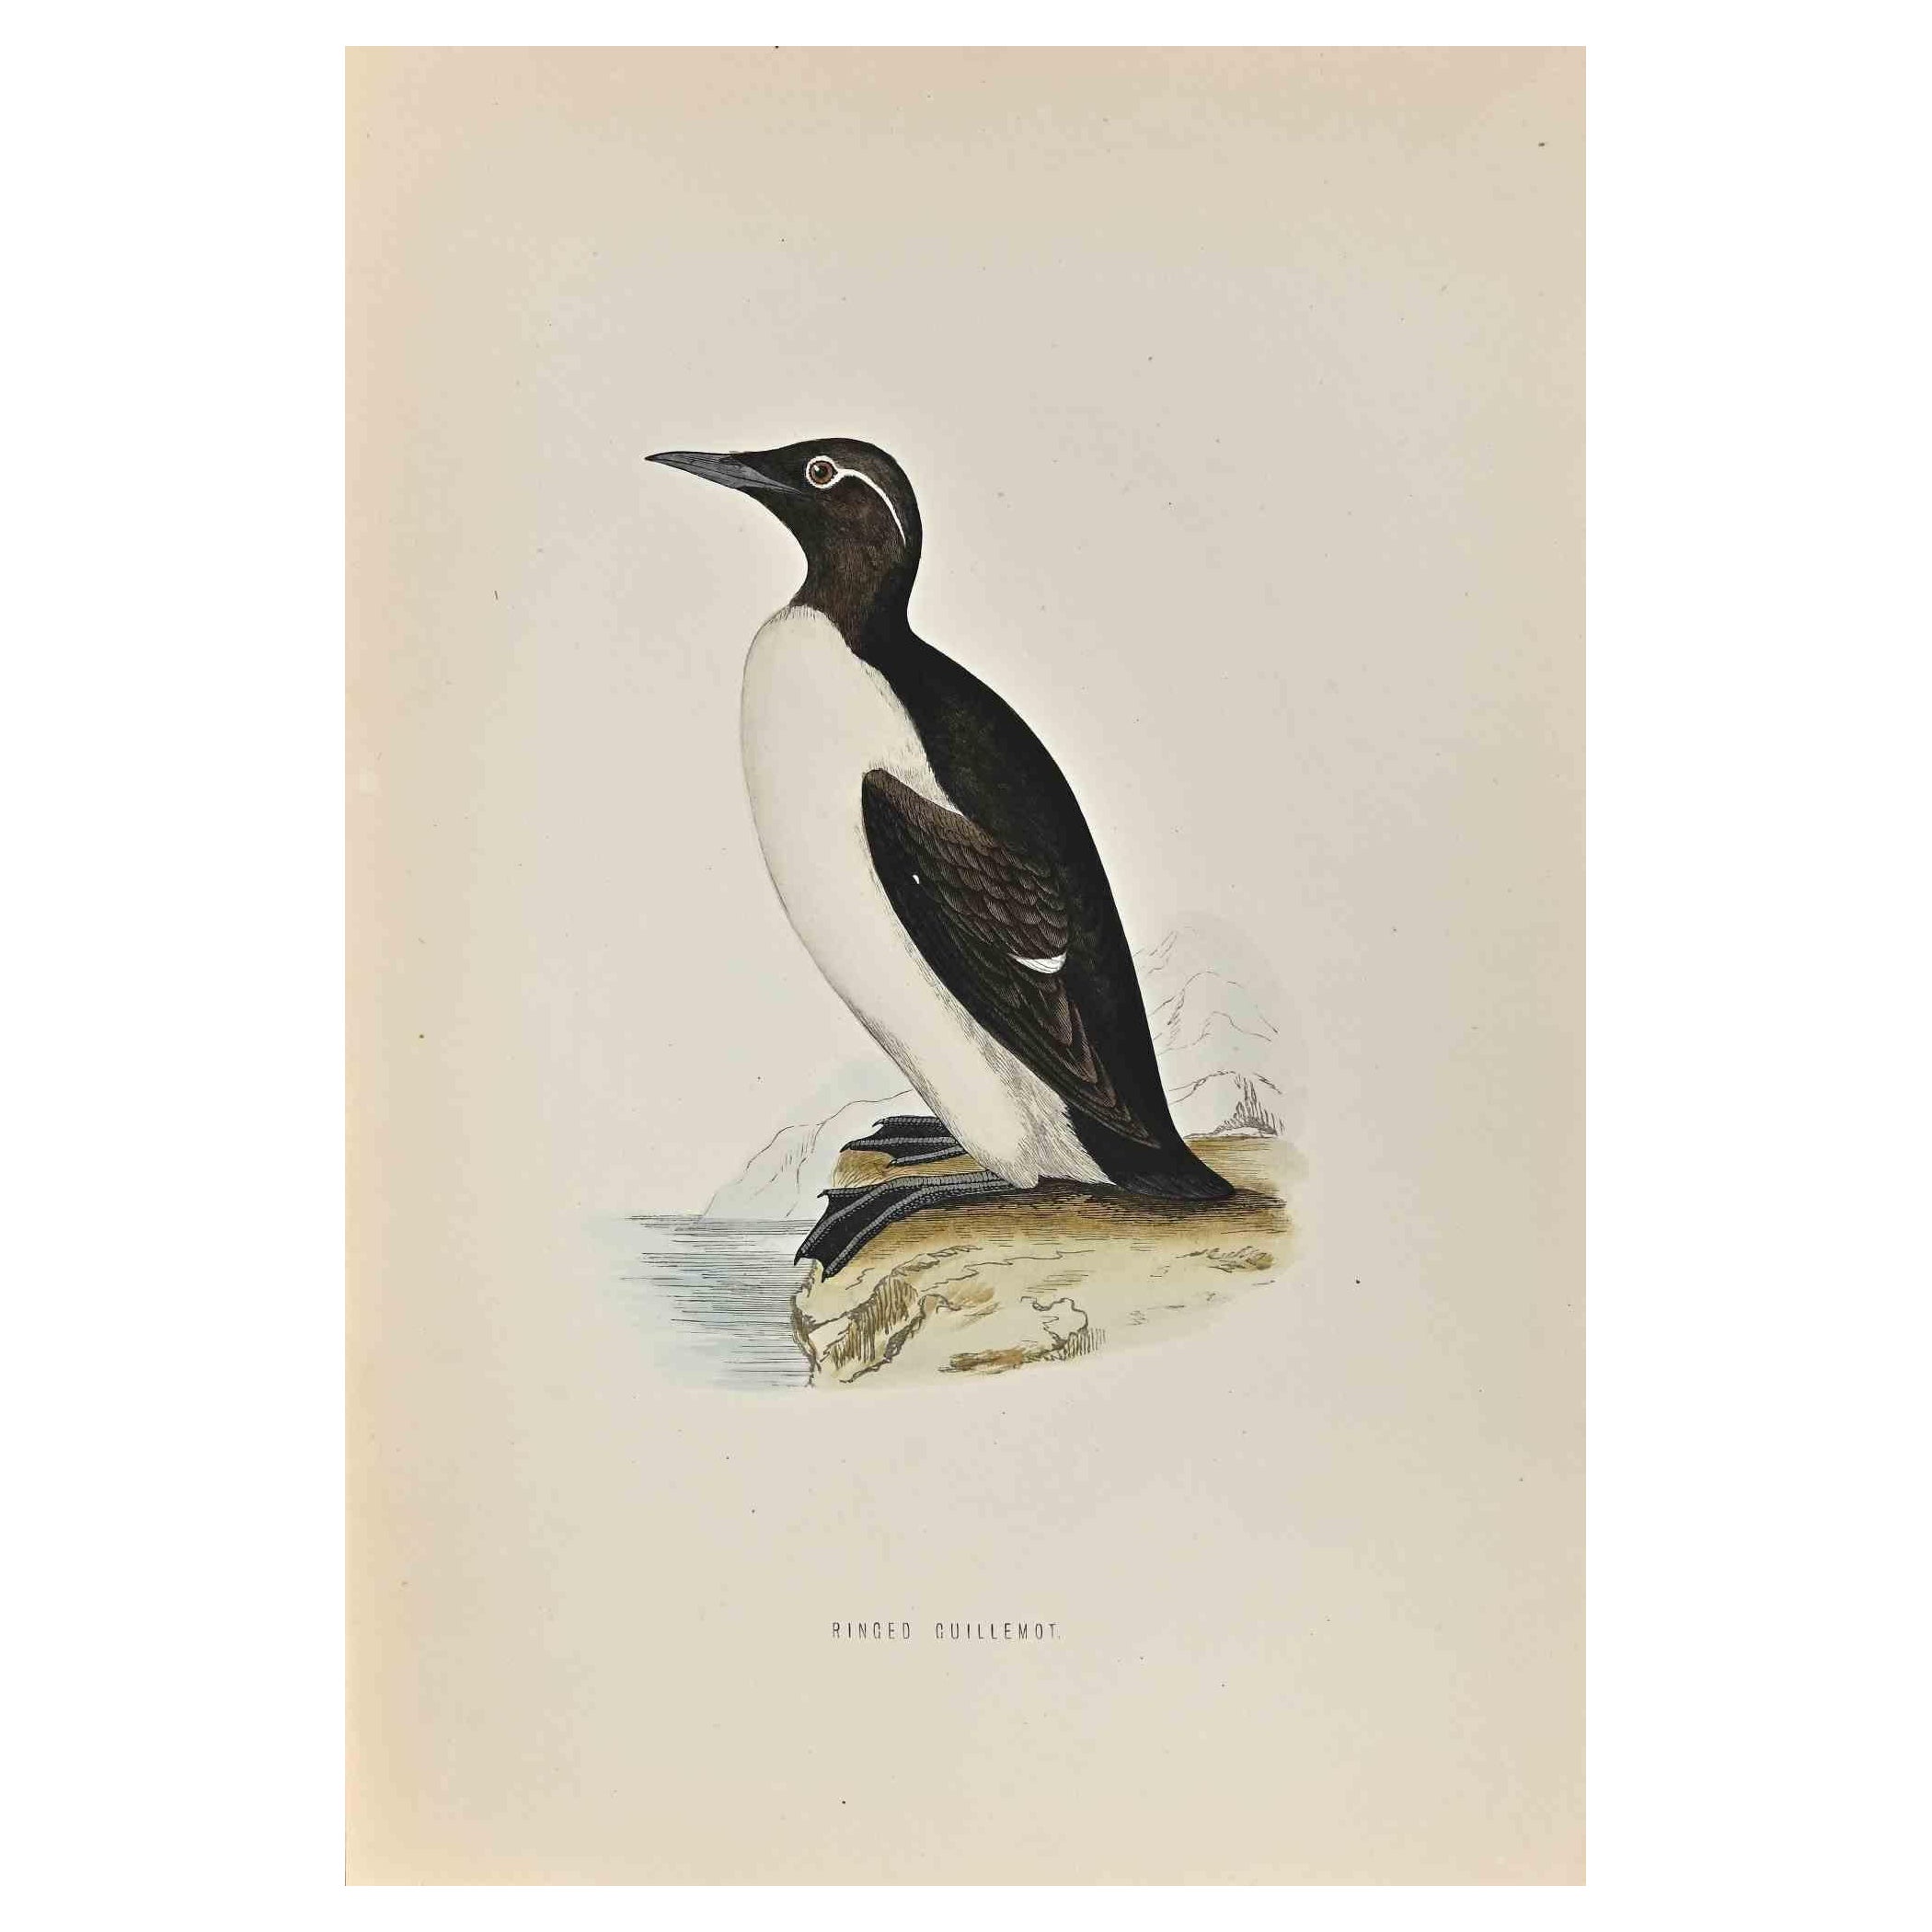 Ringed Guillemot ist ein modernes Kunstwerk, das 1870 von dem britischen Künstler Alexander Francis Lydon (1836-1917) geschaffen wurde. 

Holzschnitt, handkoloriert, veröffentlicht von London, Bell & Sons, 1870.  Name des Vogels in der Platte